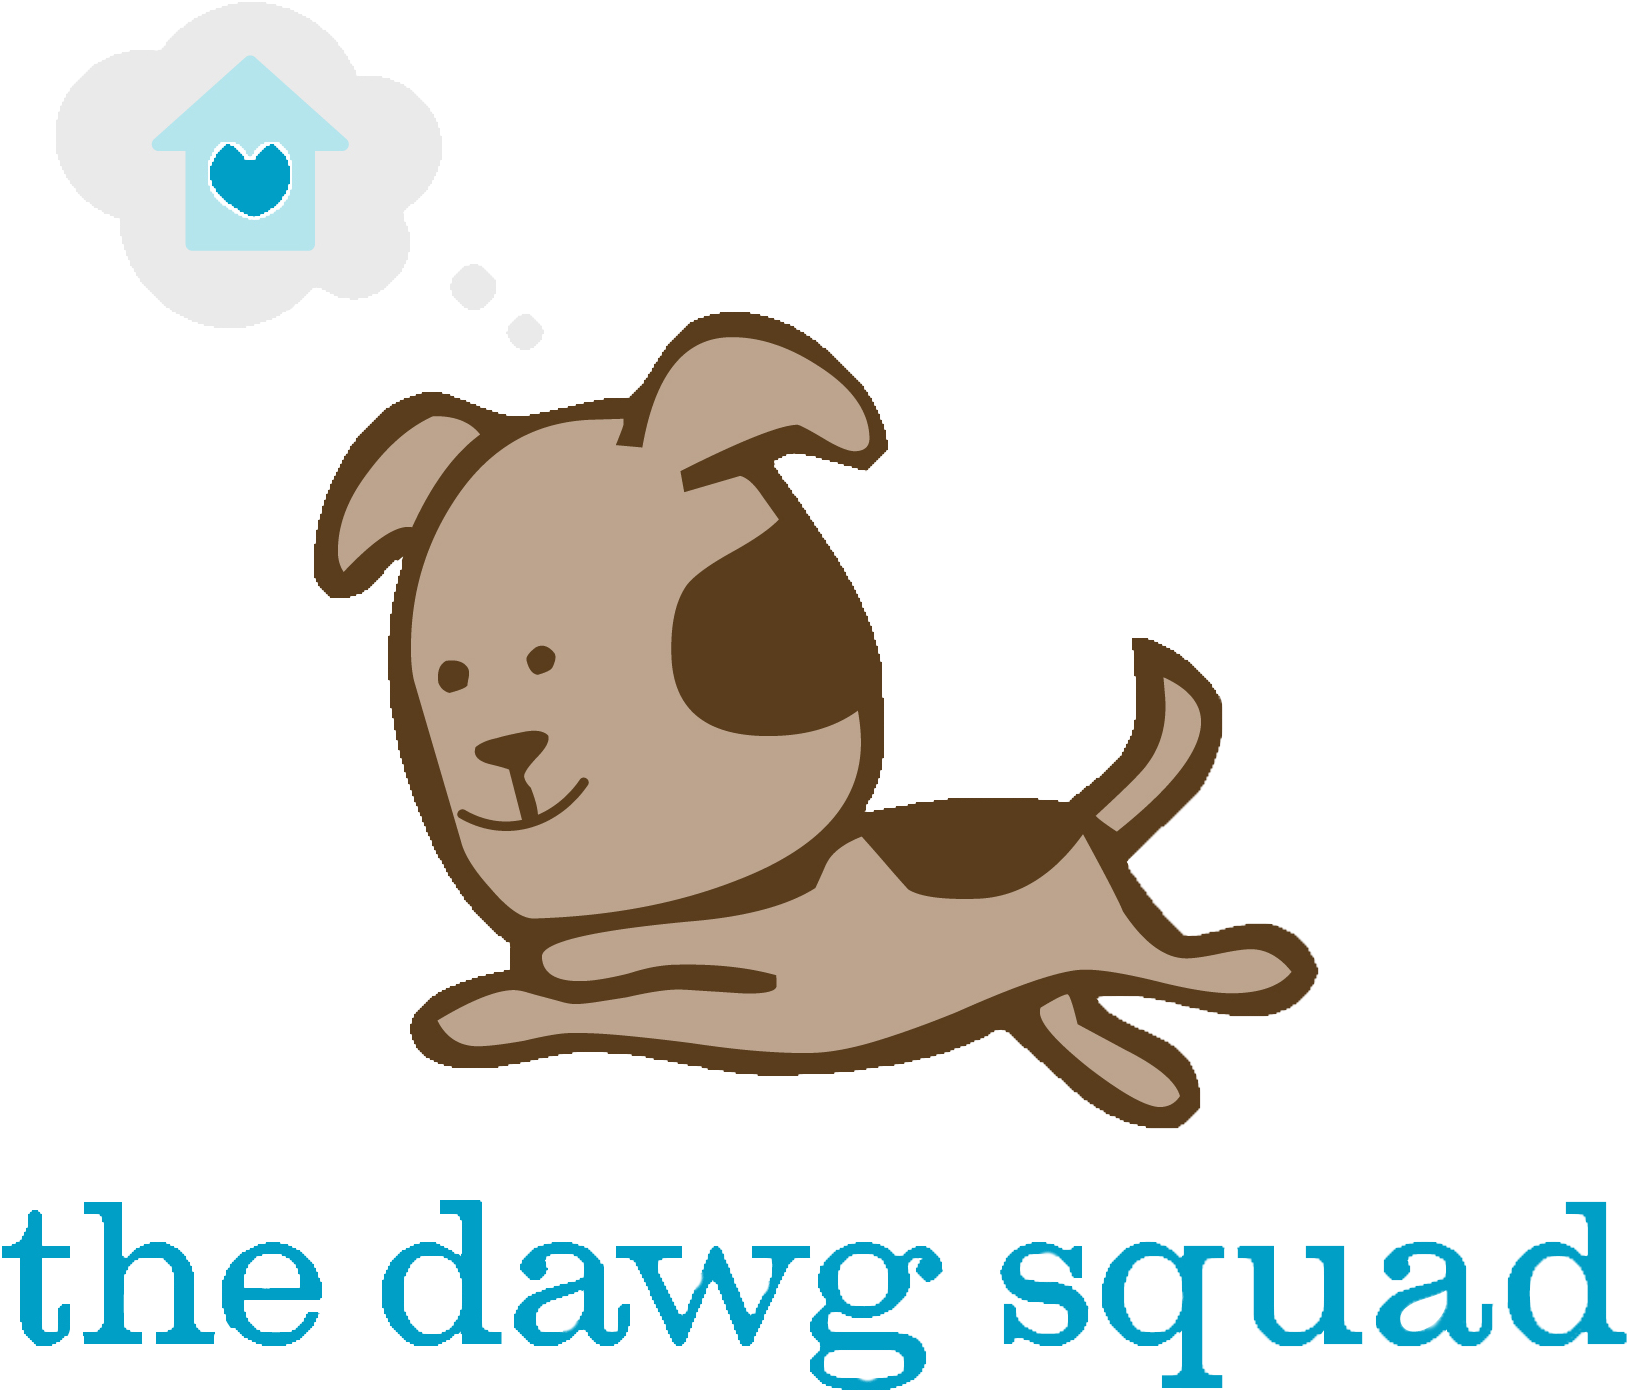 Dawg Squad Logo - Dawg Squad (1926x1691)